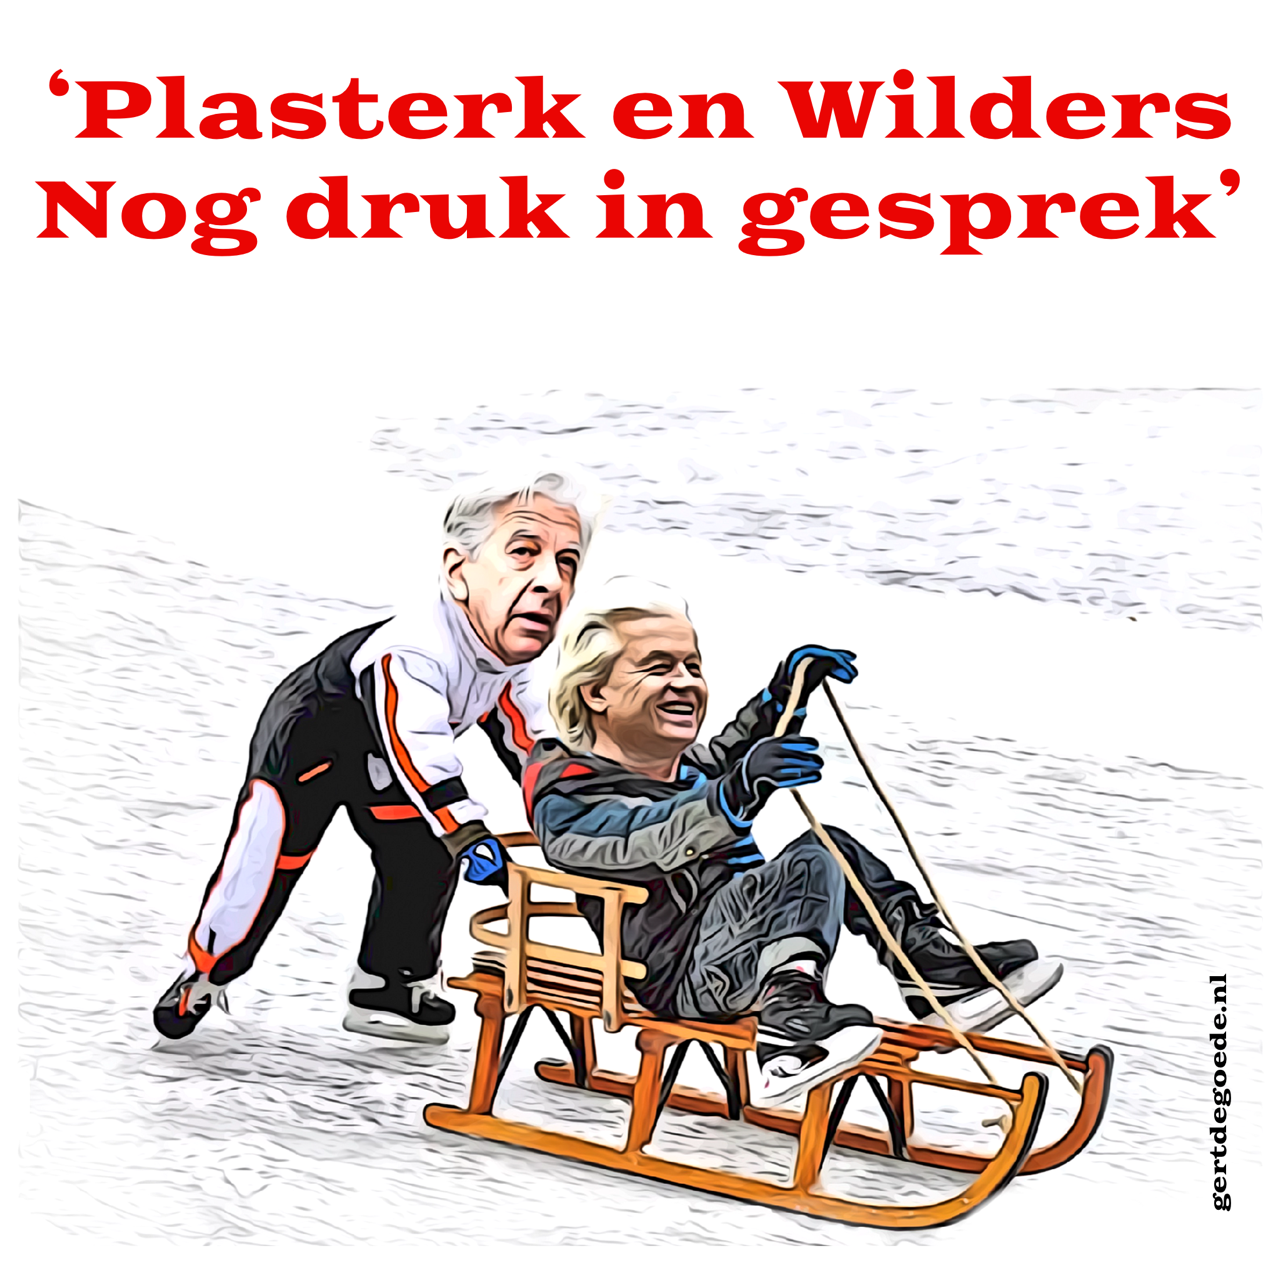 Hilversum Ronald Plasterk Geert Wilders wetsvoorstellen PVV tweede kamer verkiezingen kabinet formatie formateur